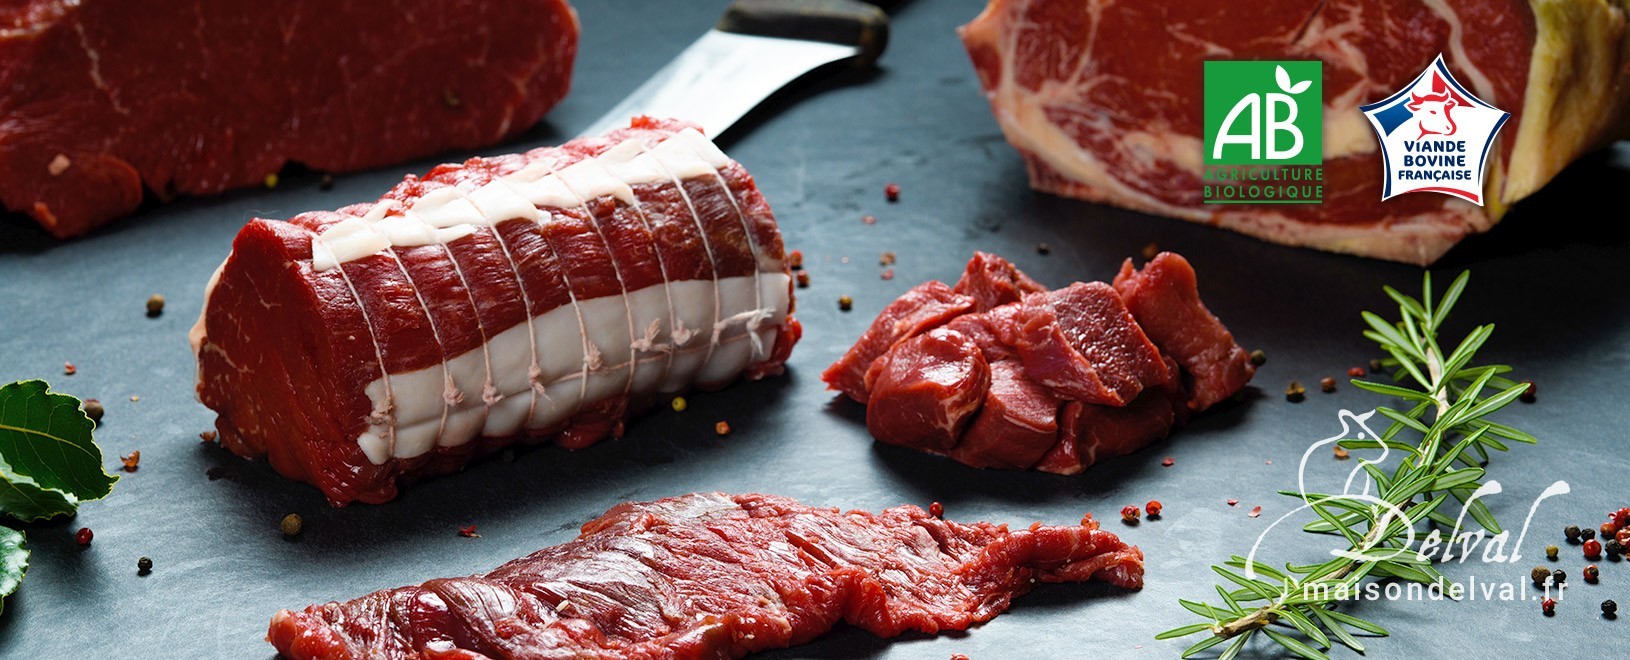 Viande de bœuf biologique - Vente en ligne - Boucherie Maison Delval